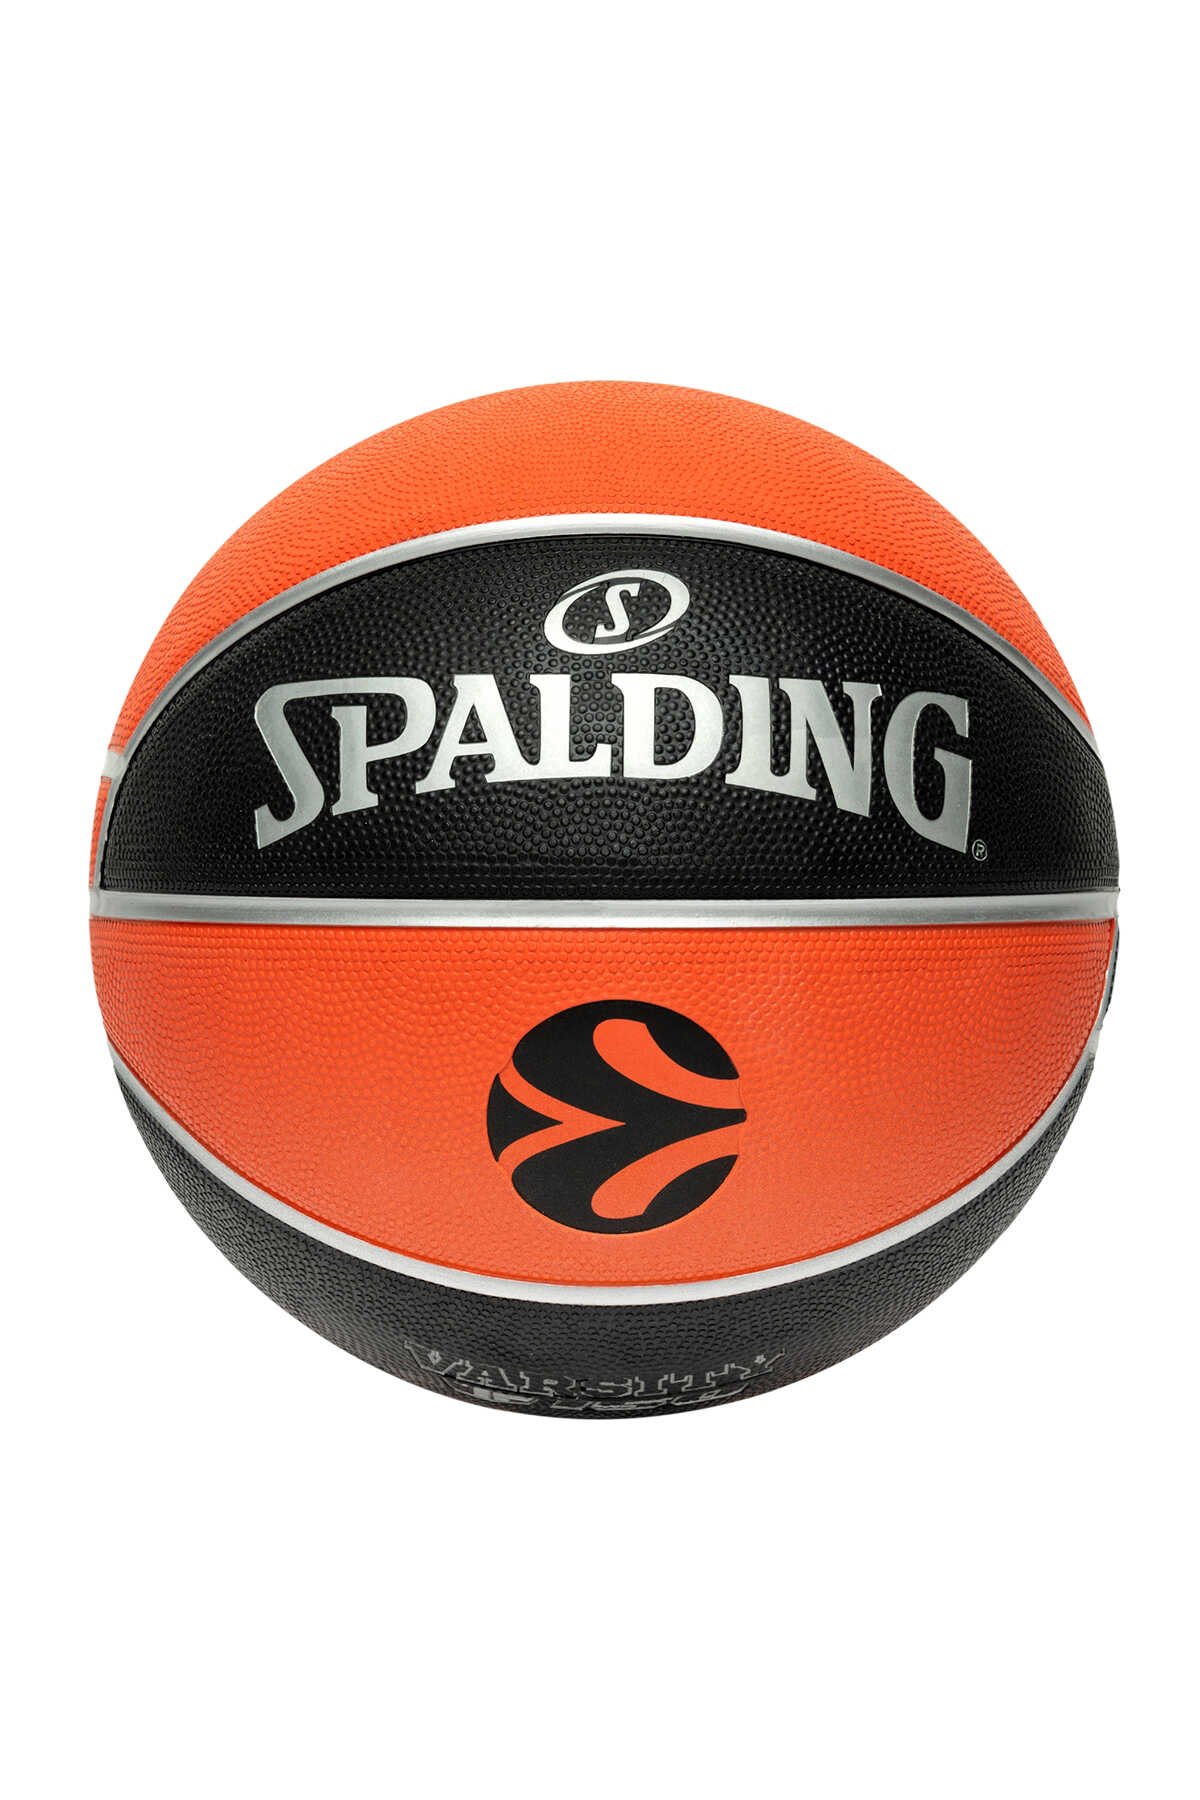 Spalding - Spalding TF-150 Basketbol Topu 2021 Size:6 (84-507Z) Basketbol Topları